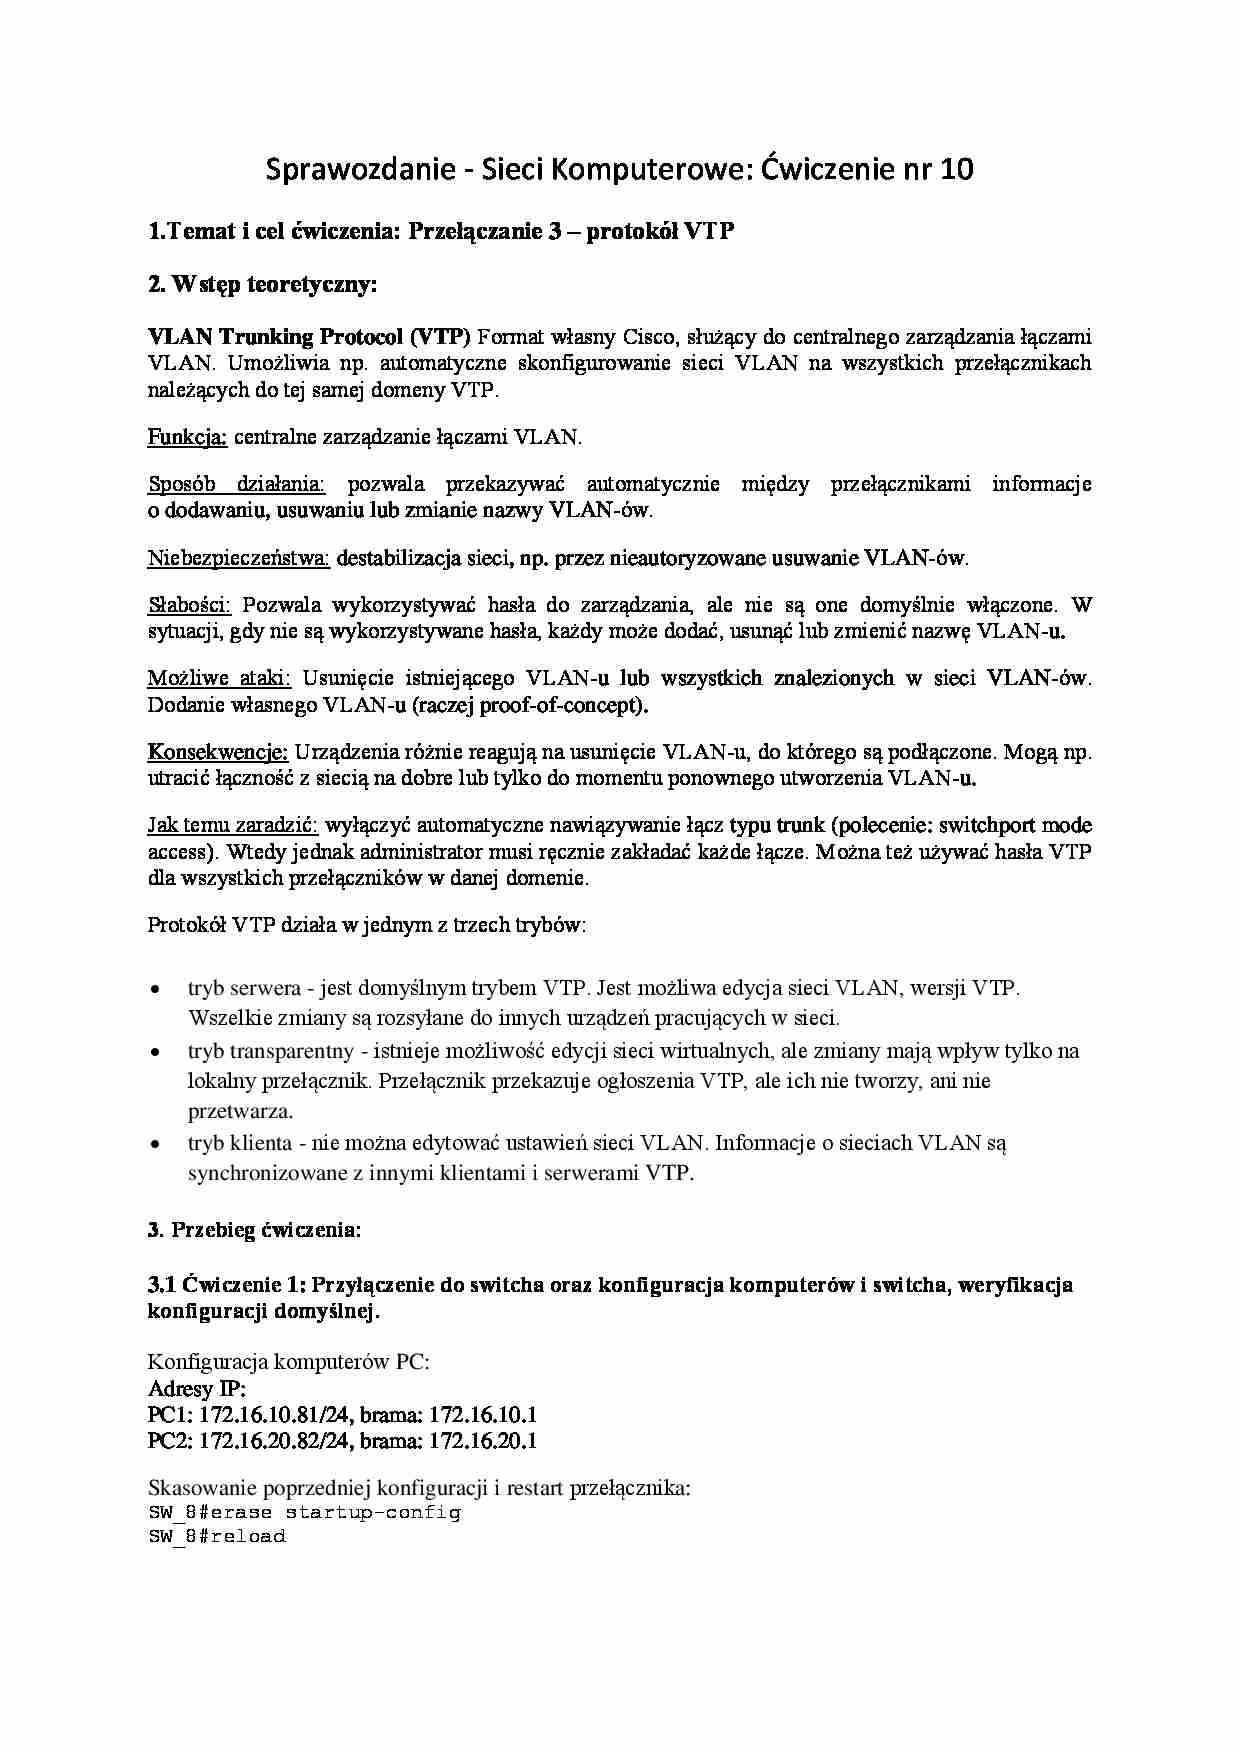 Temat i cel ćwiczenia: Przełączanie 3 - protokół VTP - strona 1